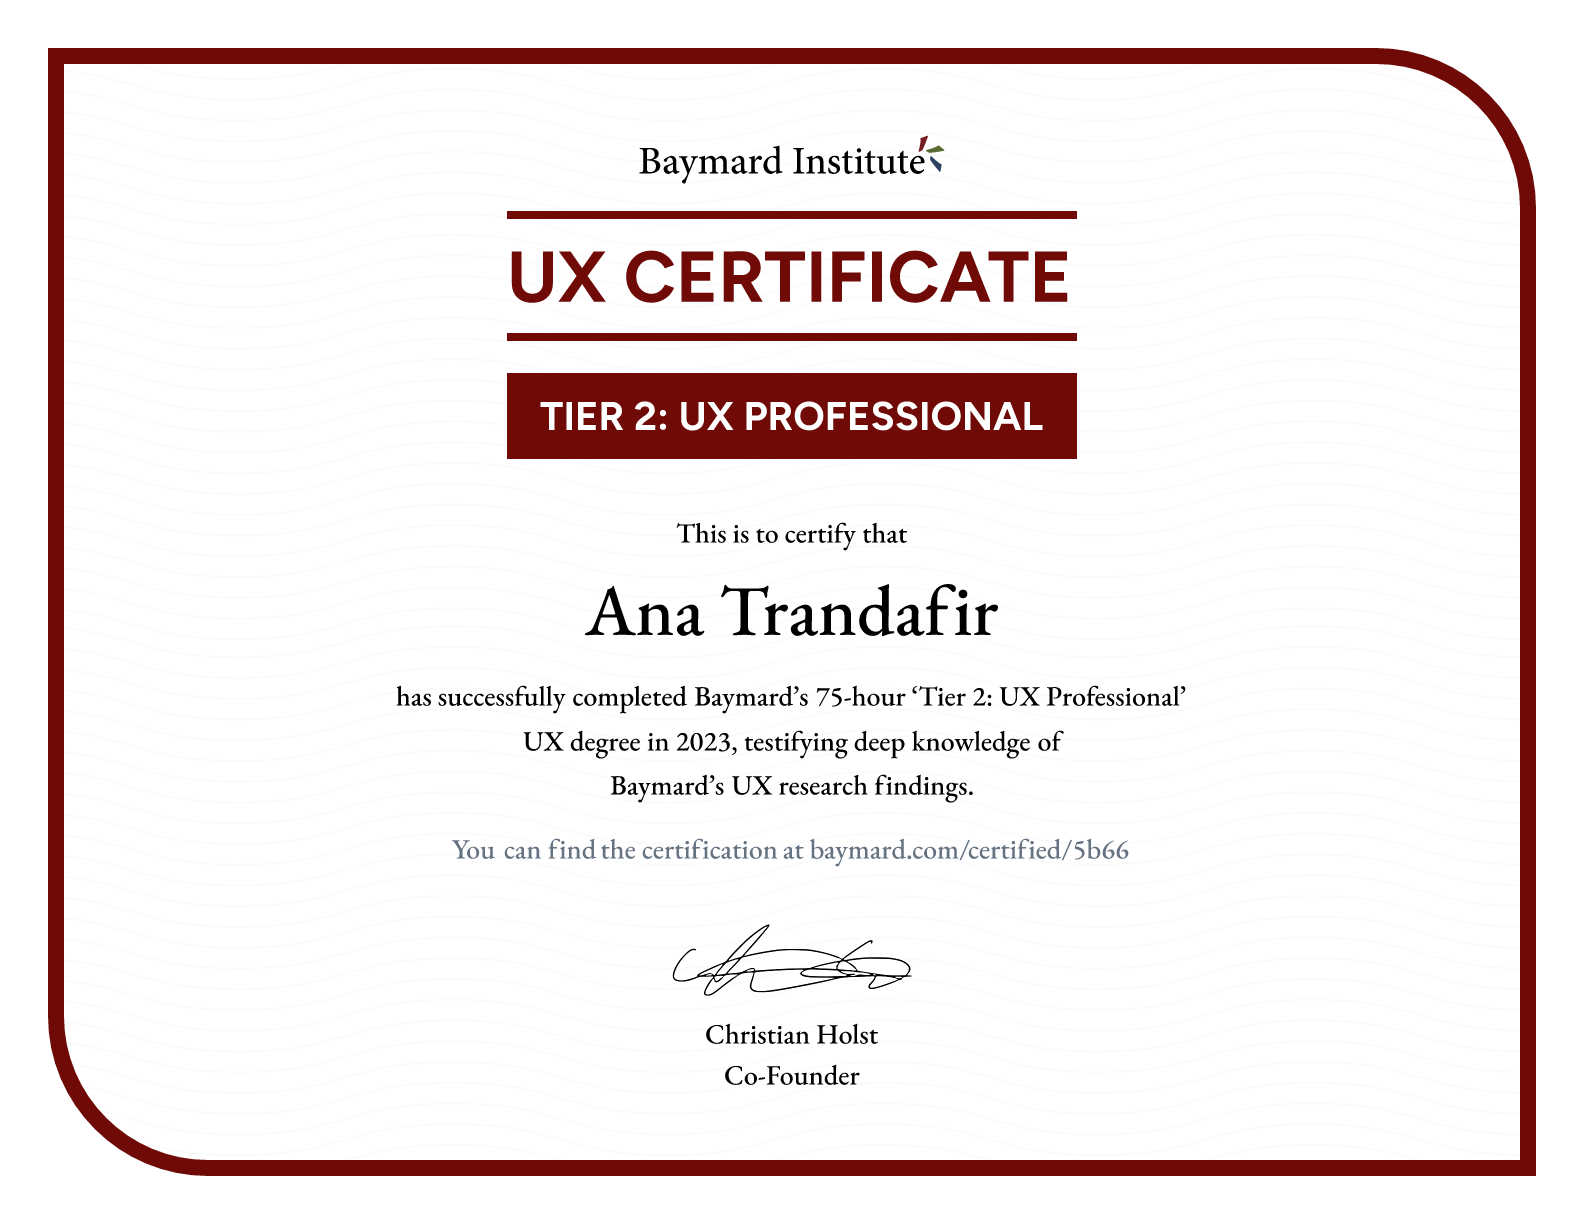 Ana Trandafir’s certificate